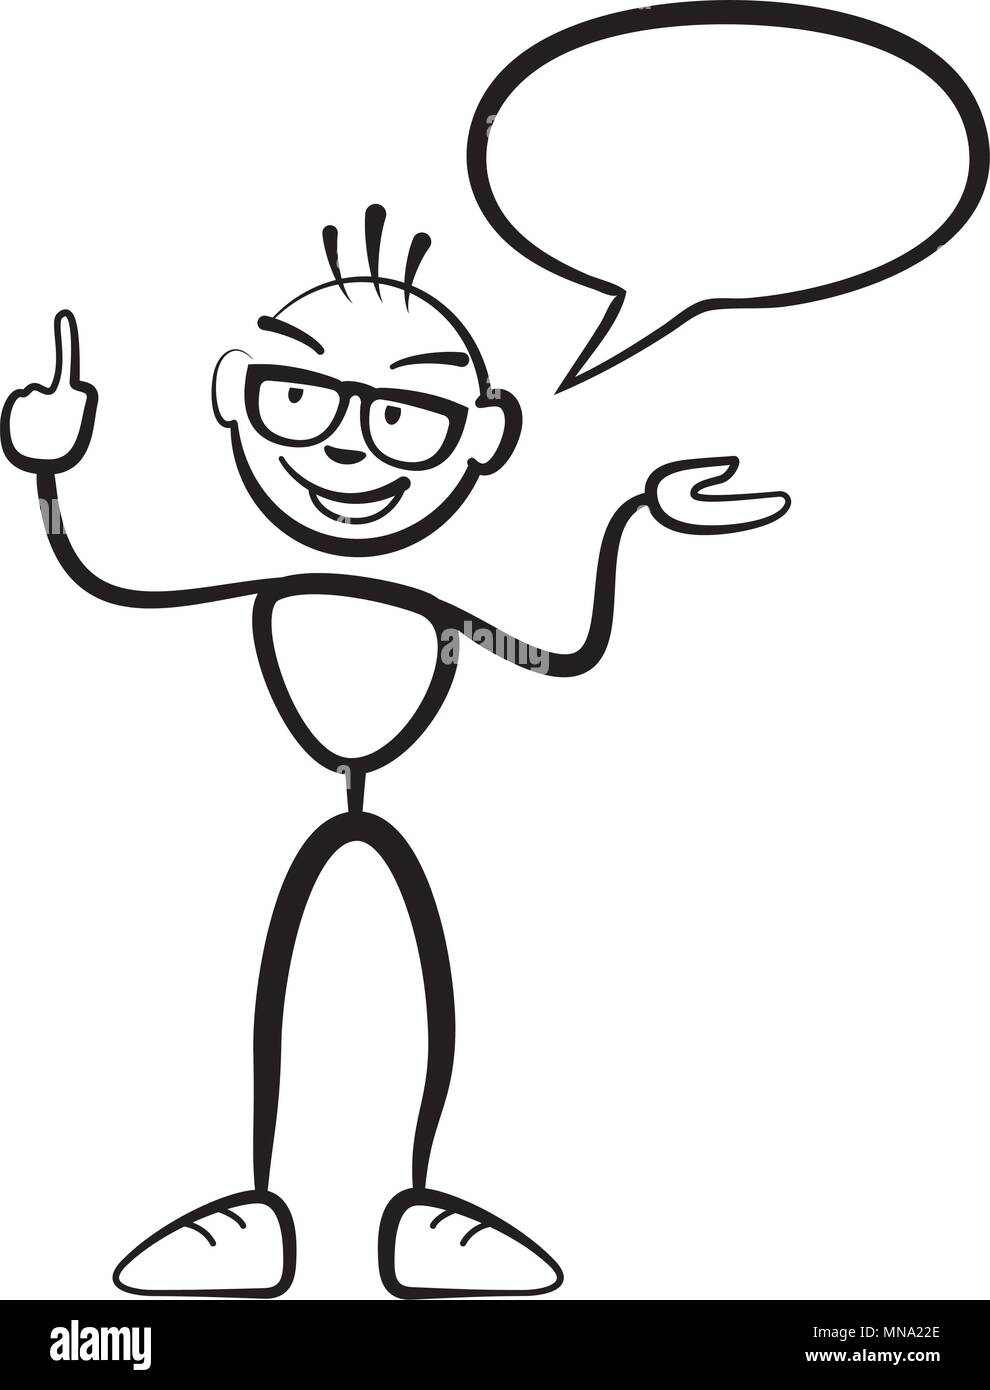 Strichmännchen Mann persona mit Sprechblasen, Stickman Vektor-zeichnung auf weißem Hintergrund Stock Vektor